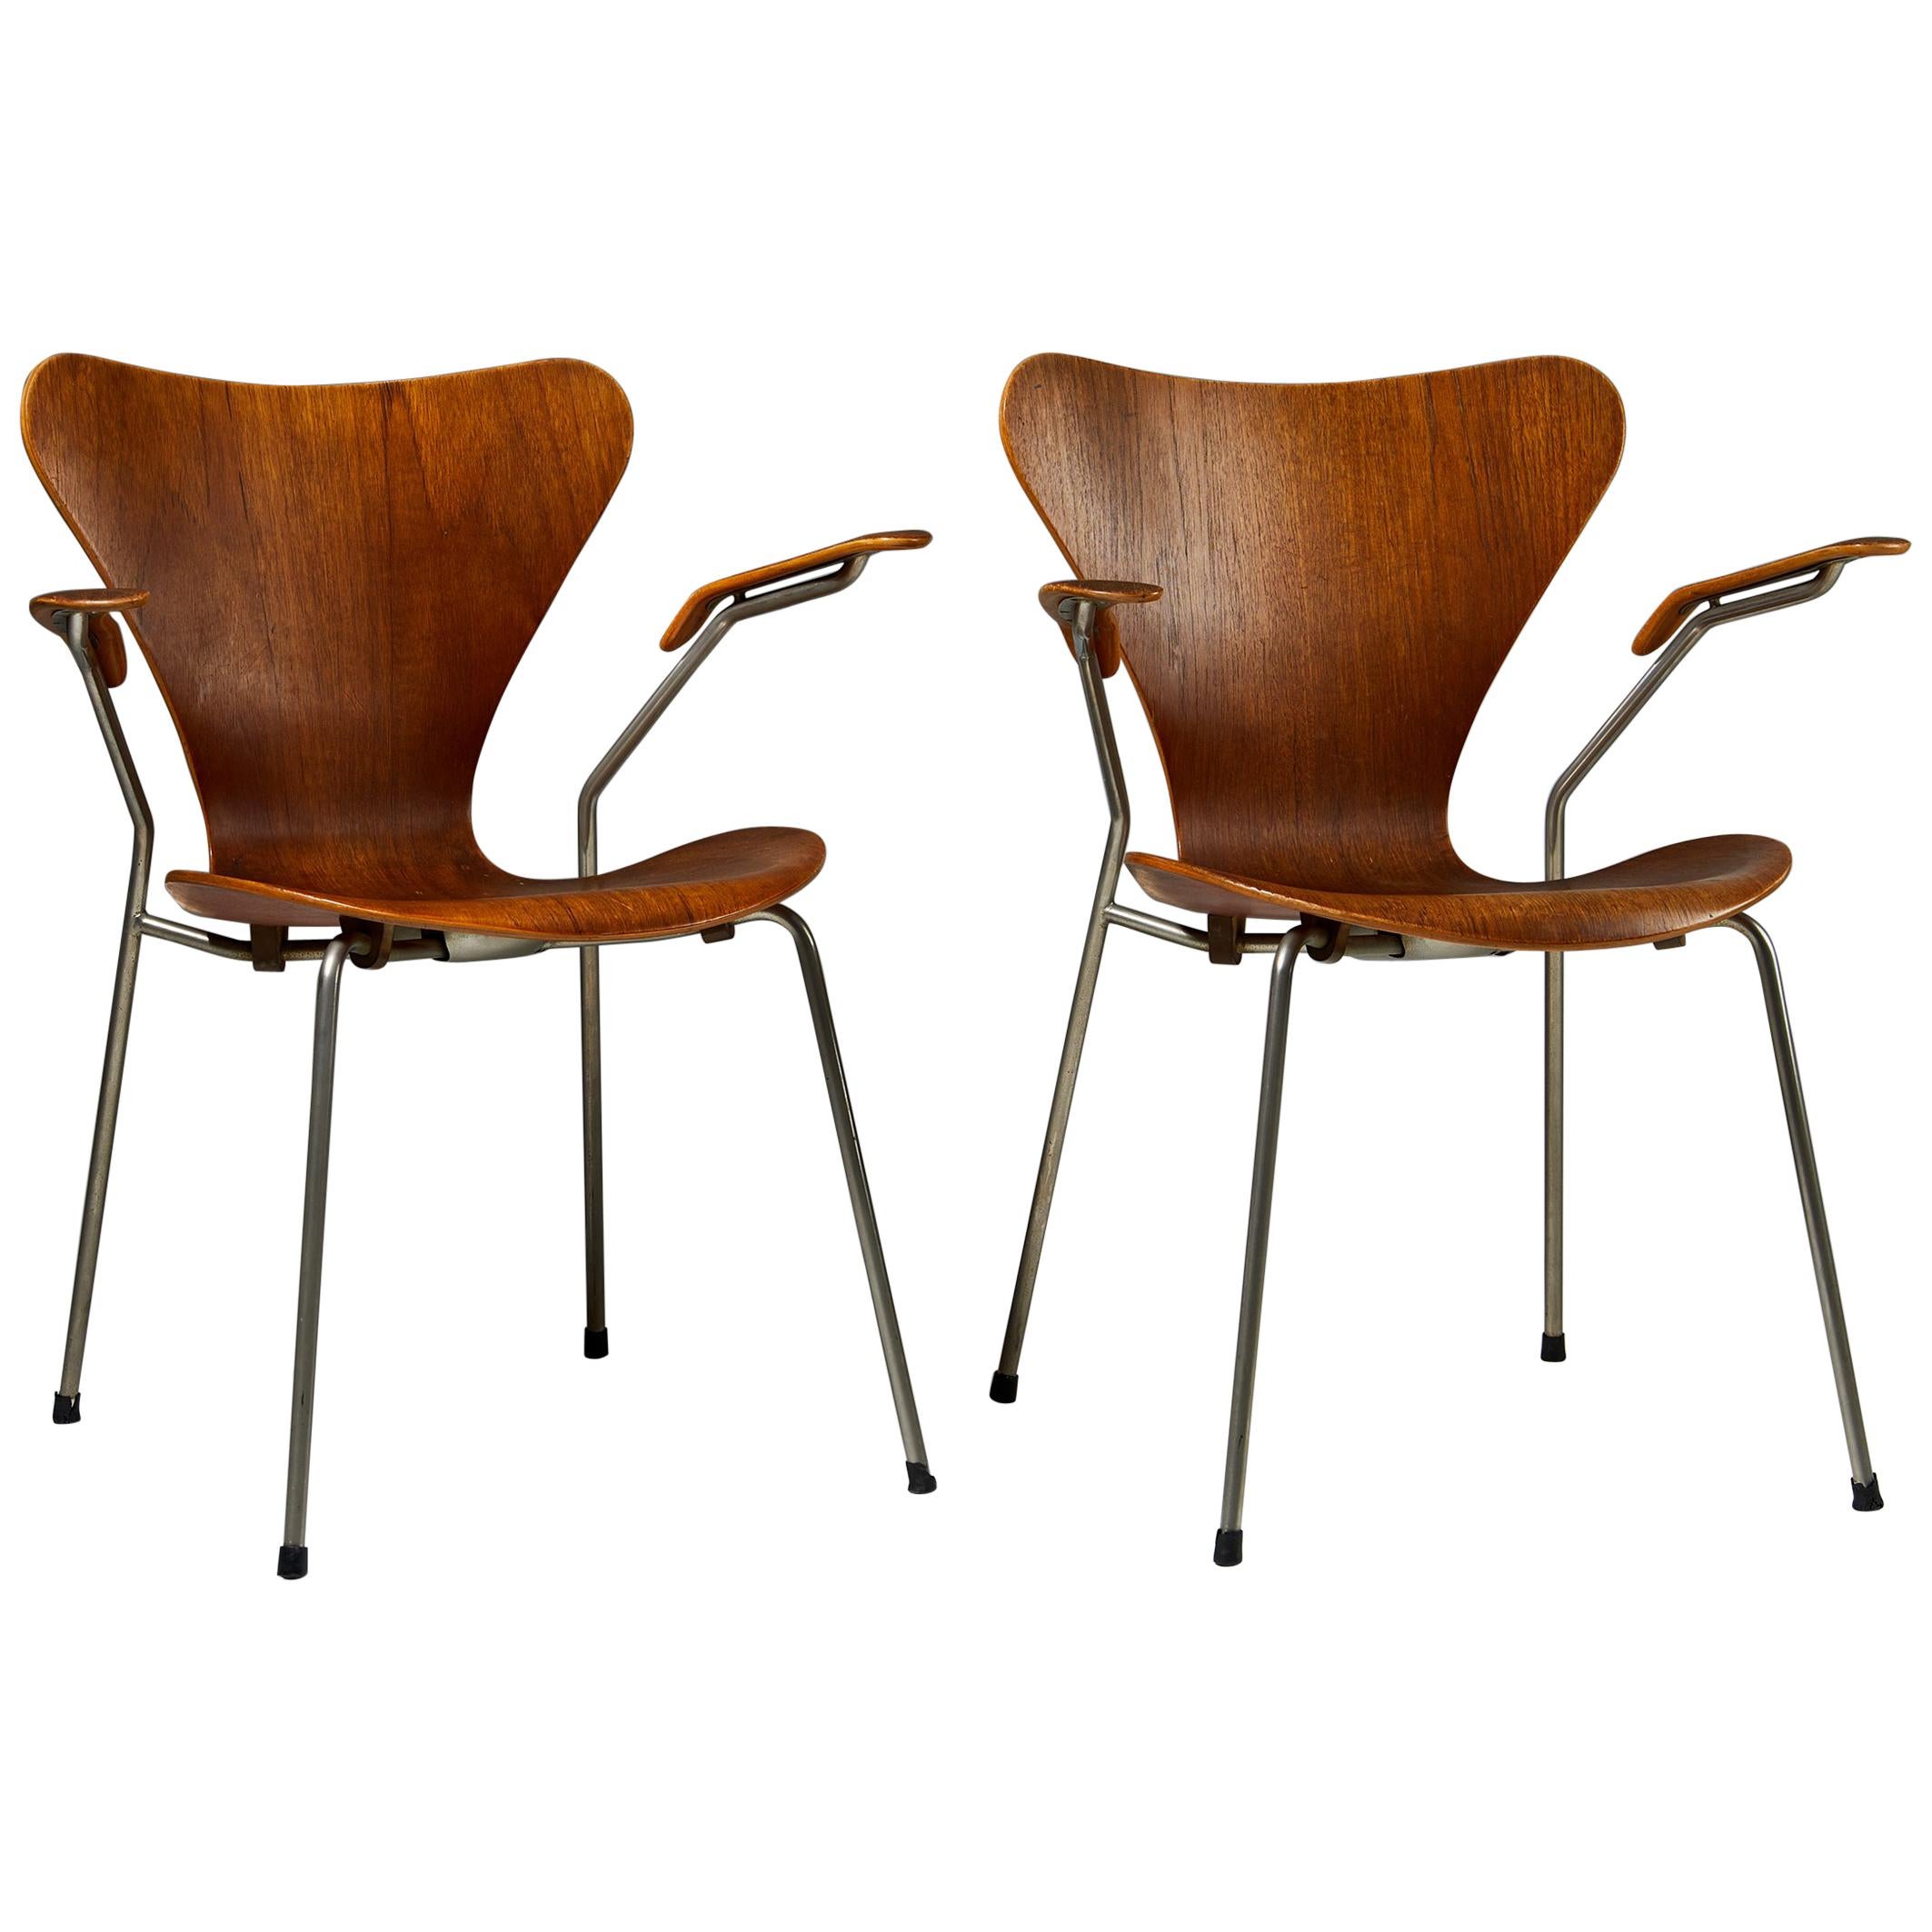 Pair of Armchairs Designed by Arne Jacobsen for Fritz Hansen, Denmark. 1950's. 